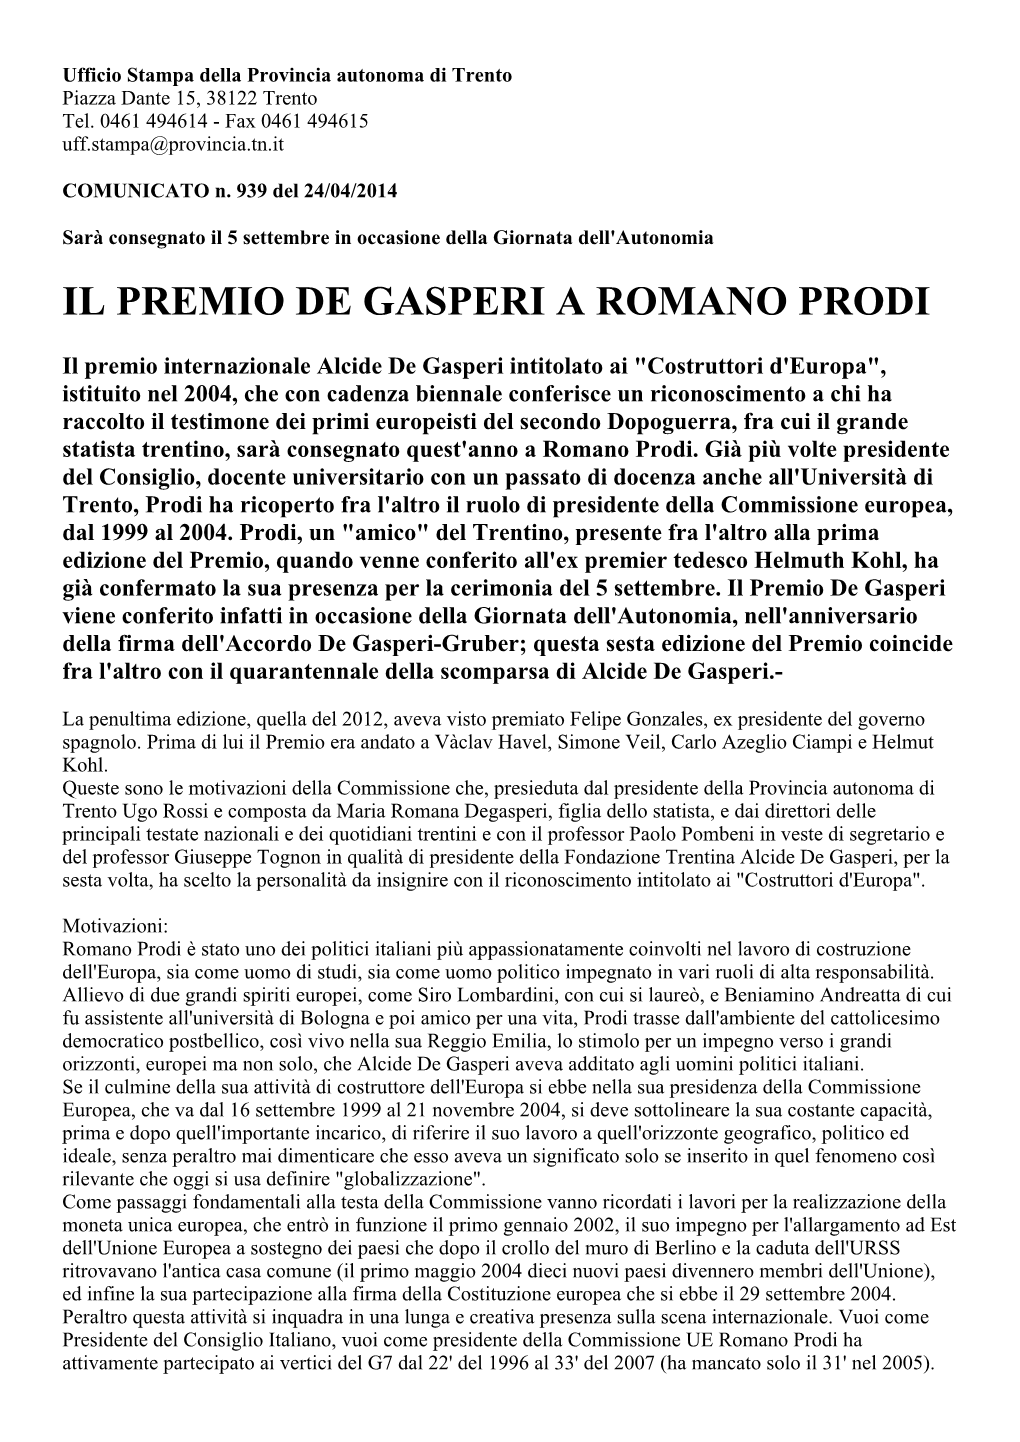 Il Premio De Gasperi a Romano Prodi